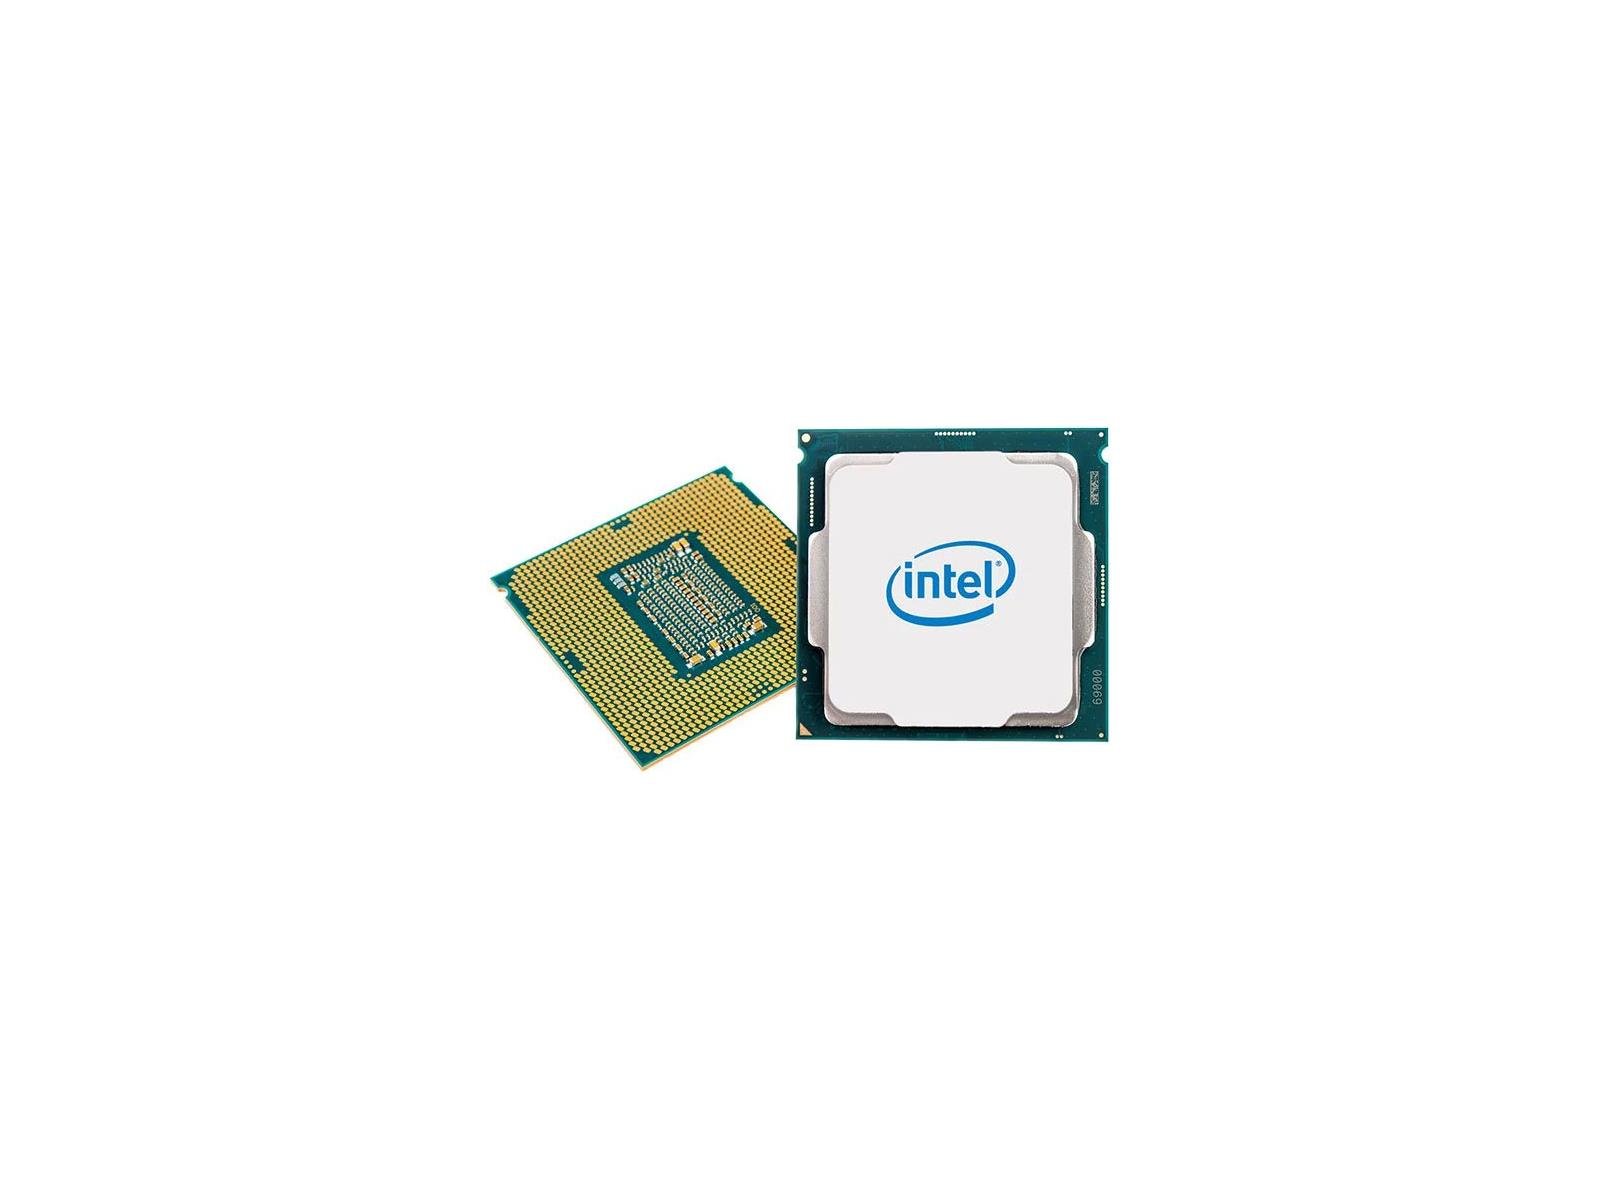 Intel 9th Gen Core i7-9700K With Z390 Motherboard Benchmarks Leak